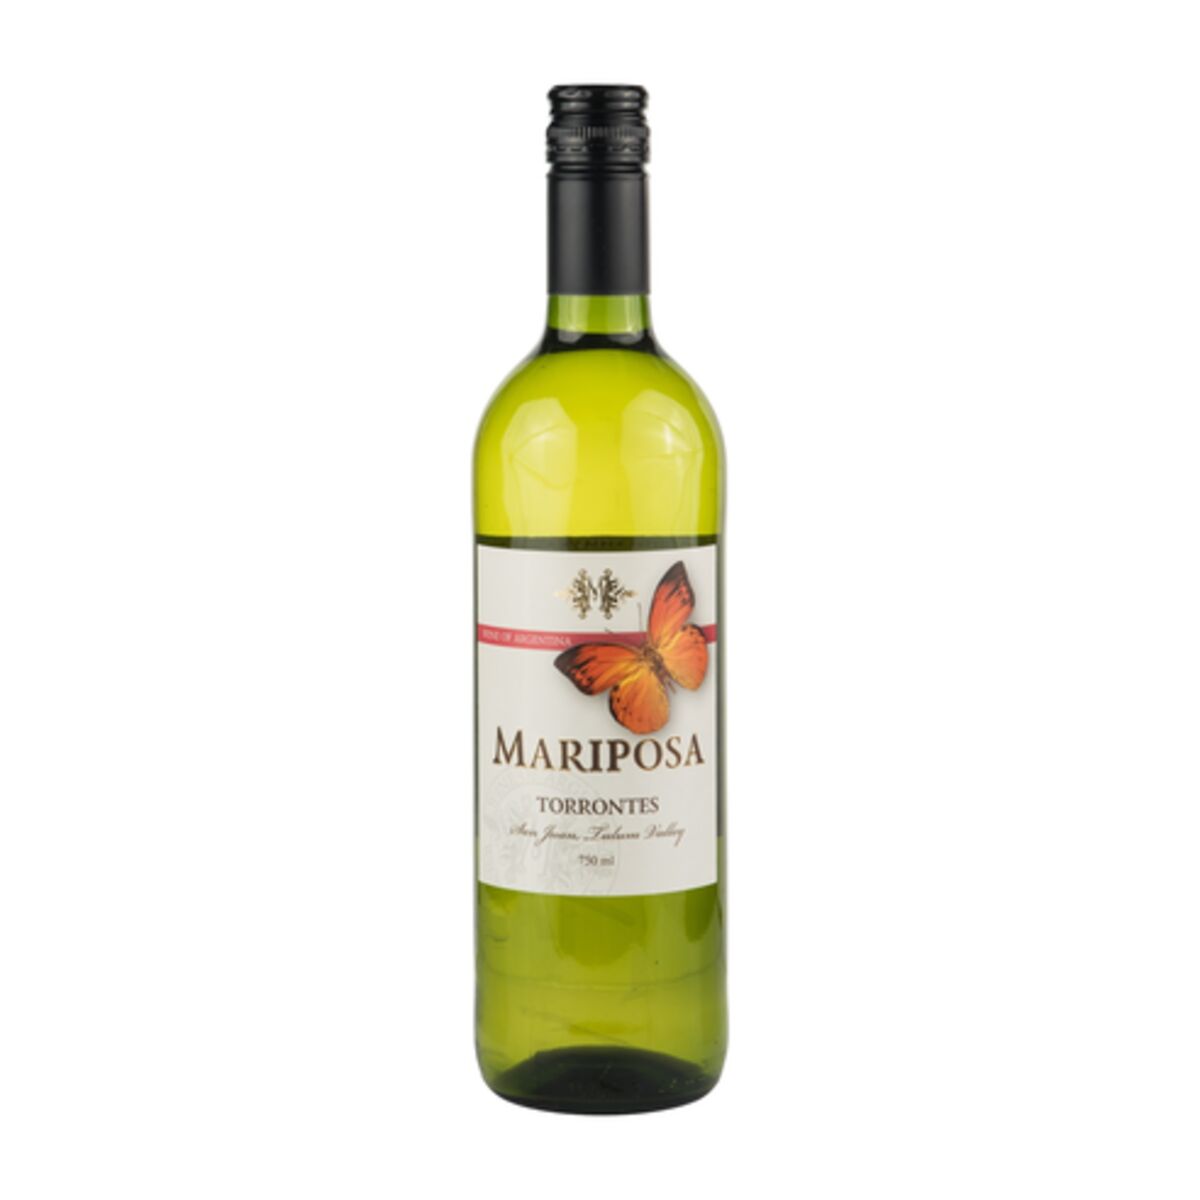 Торронтес вино белое. Вино Марипоса Торронтес бел сух. 0.75 Л вино Марипоса Торронтес белое сухое 12.5%. Вино Марипоса Торронтес белое сухое 0.75л. Вино Марипоса Торронтес.